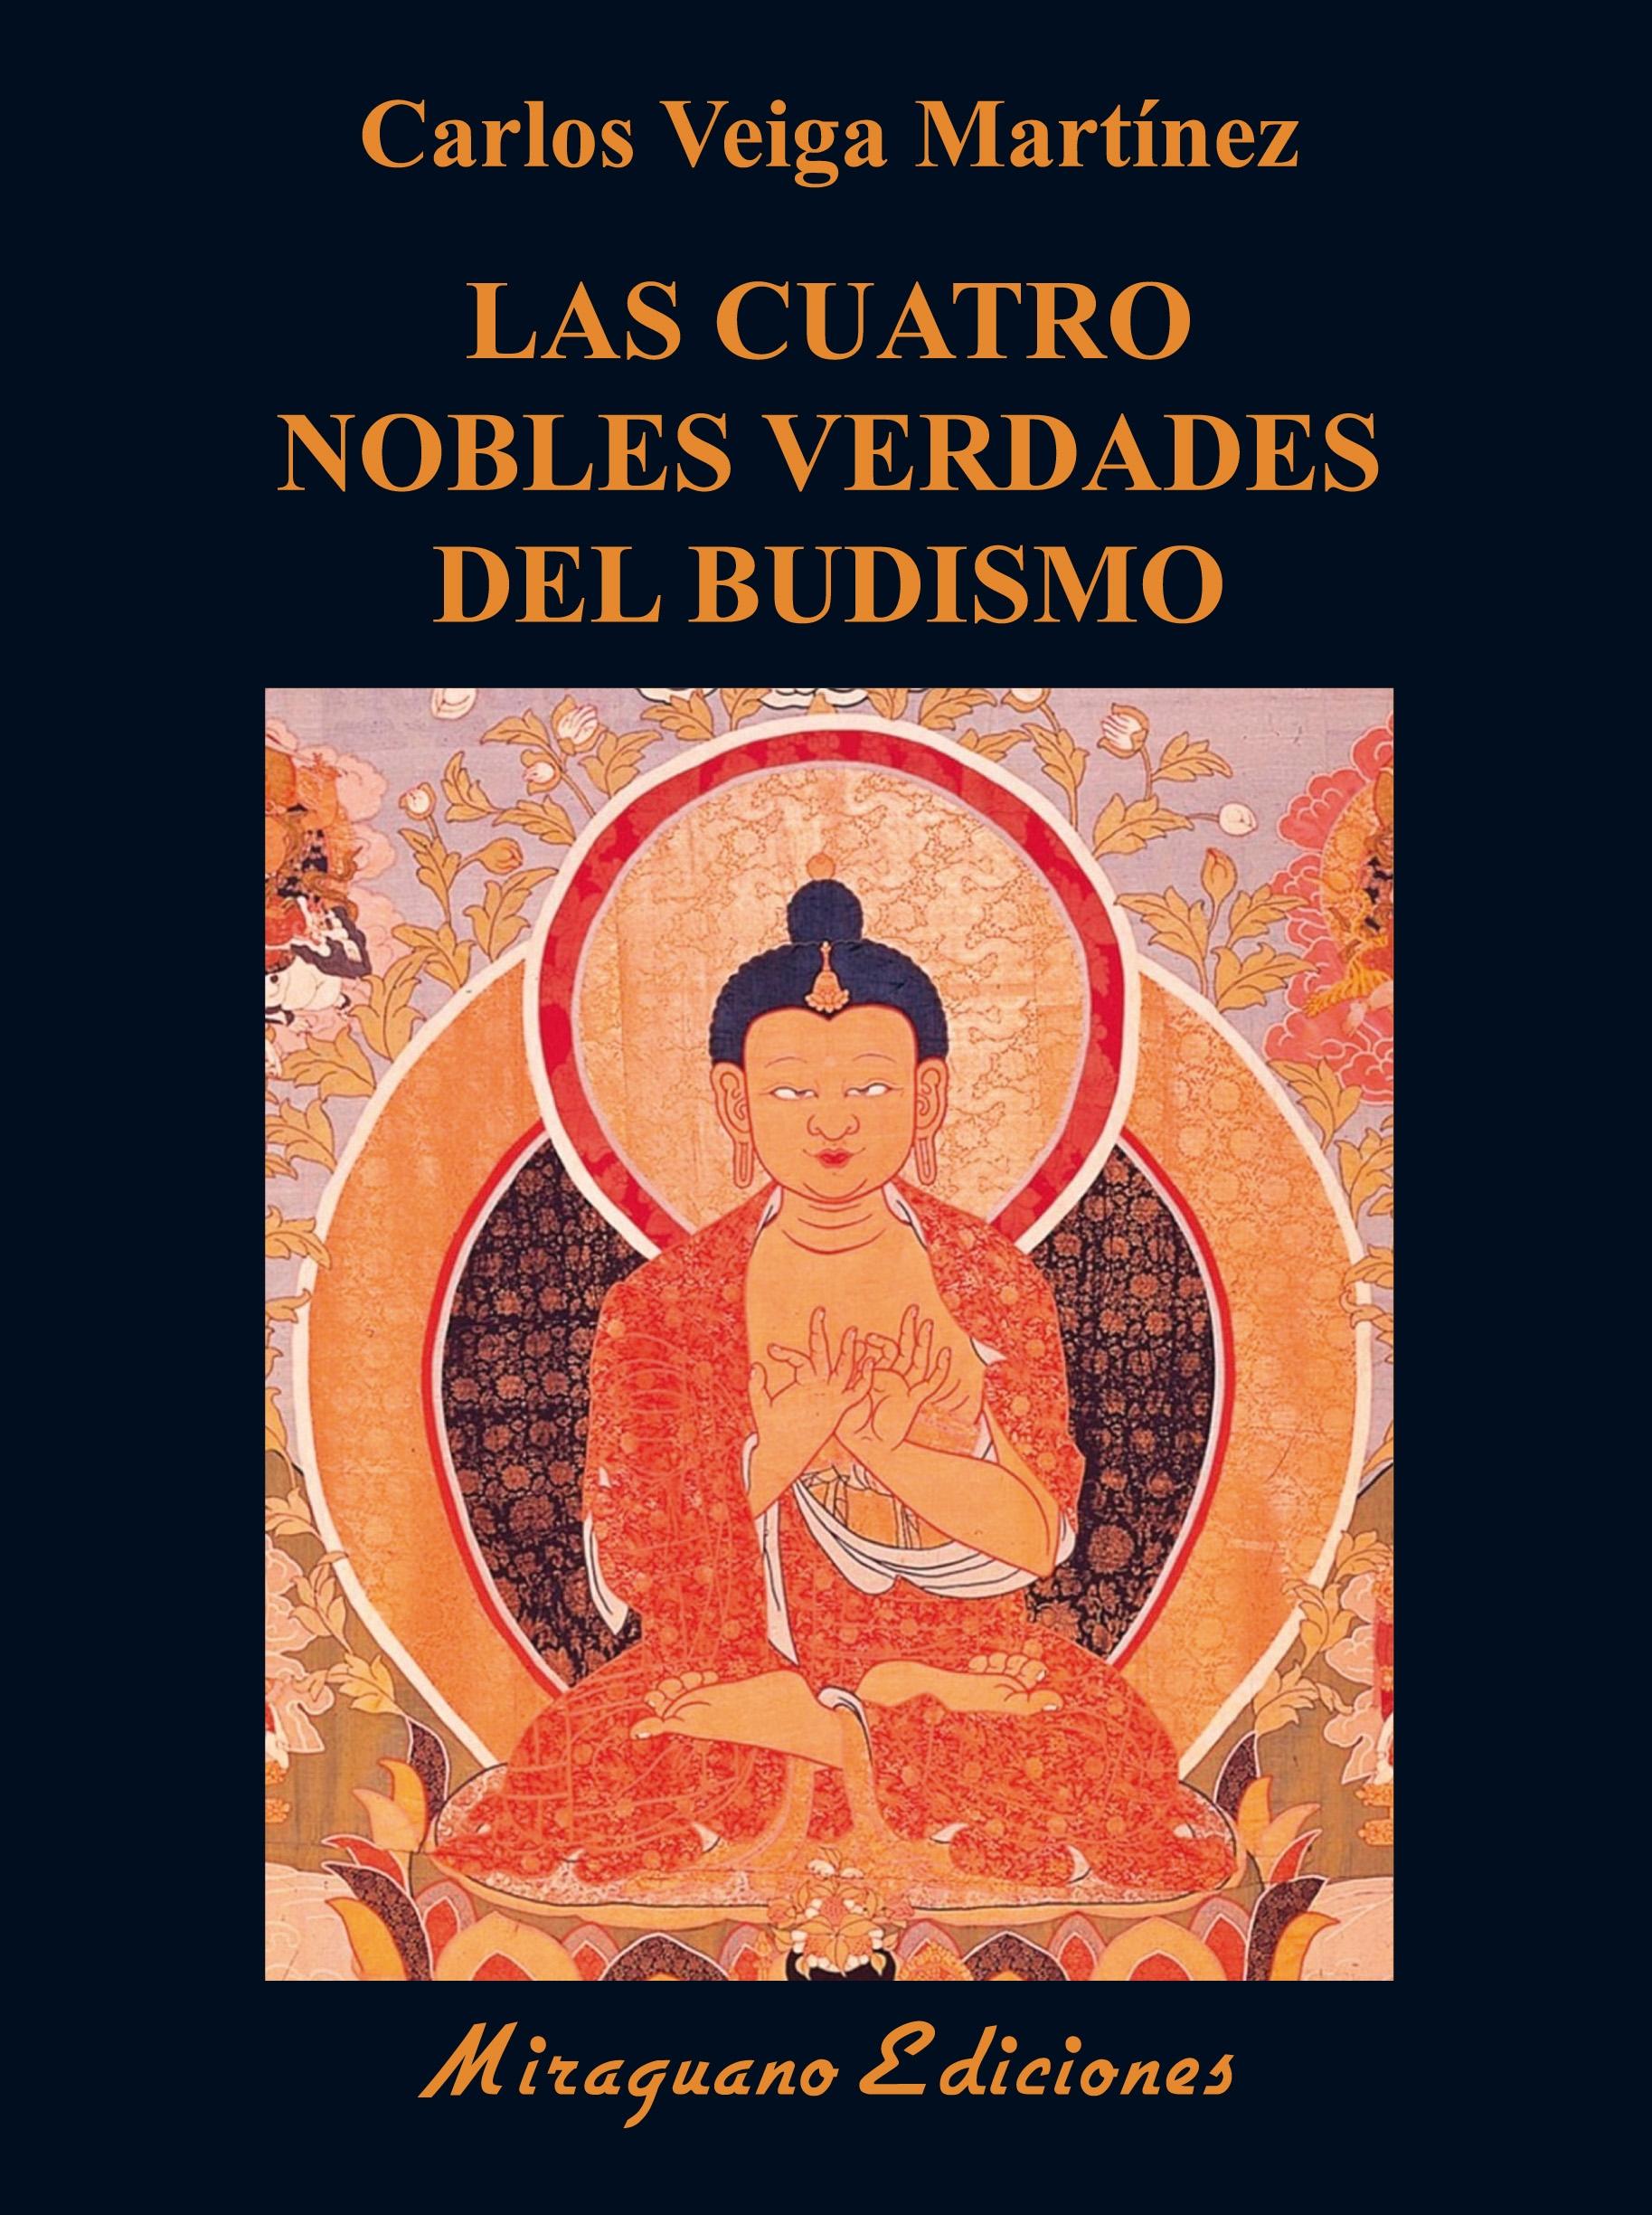 Cuatro Nobles Verdades del budismo, Las "Enseñanzas fundamentales de Buda"